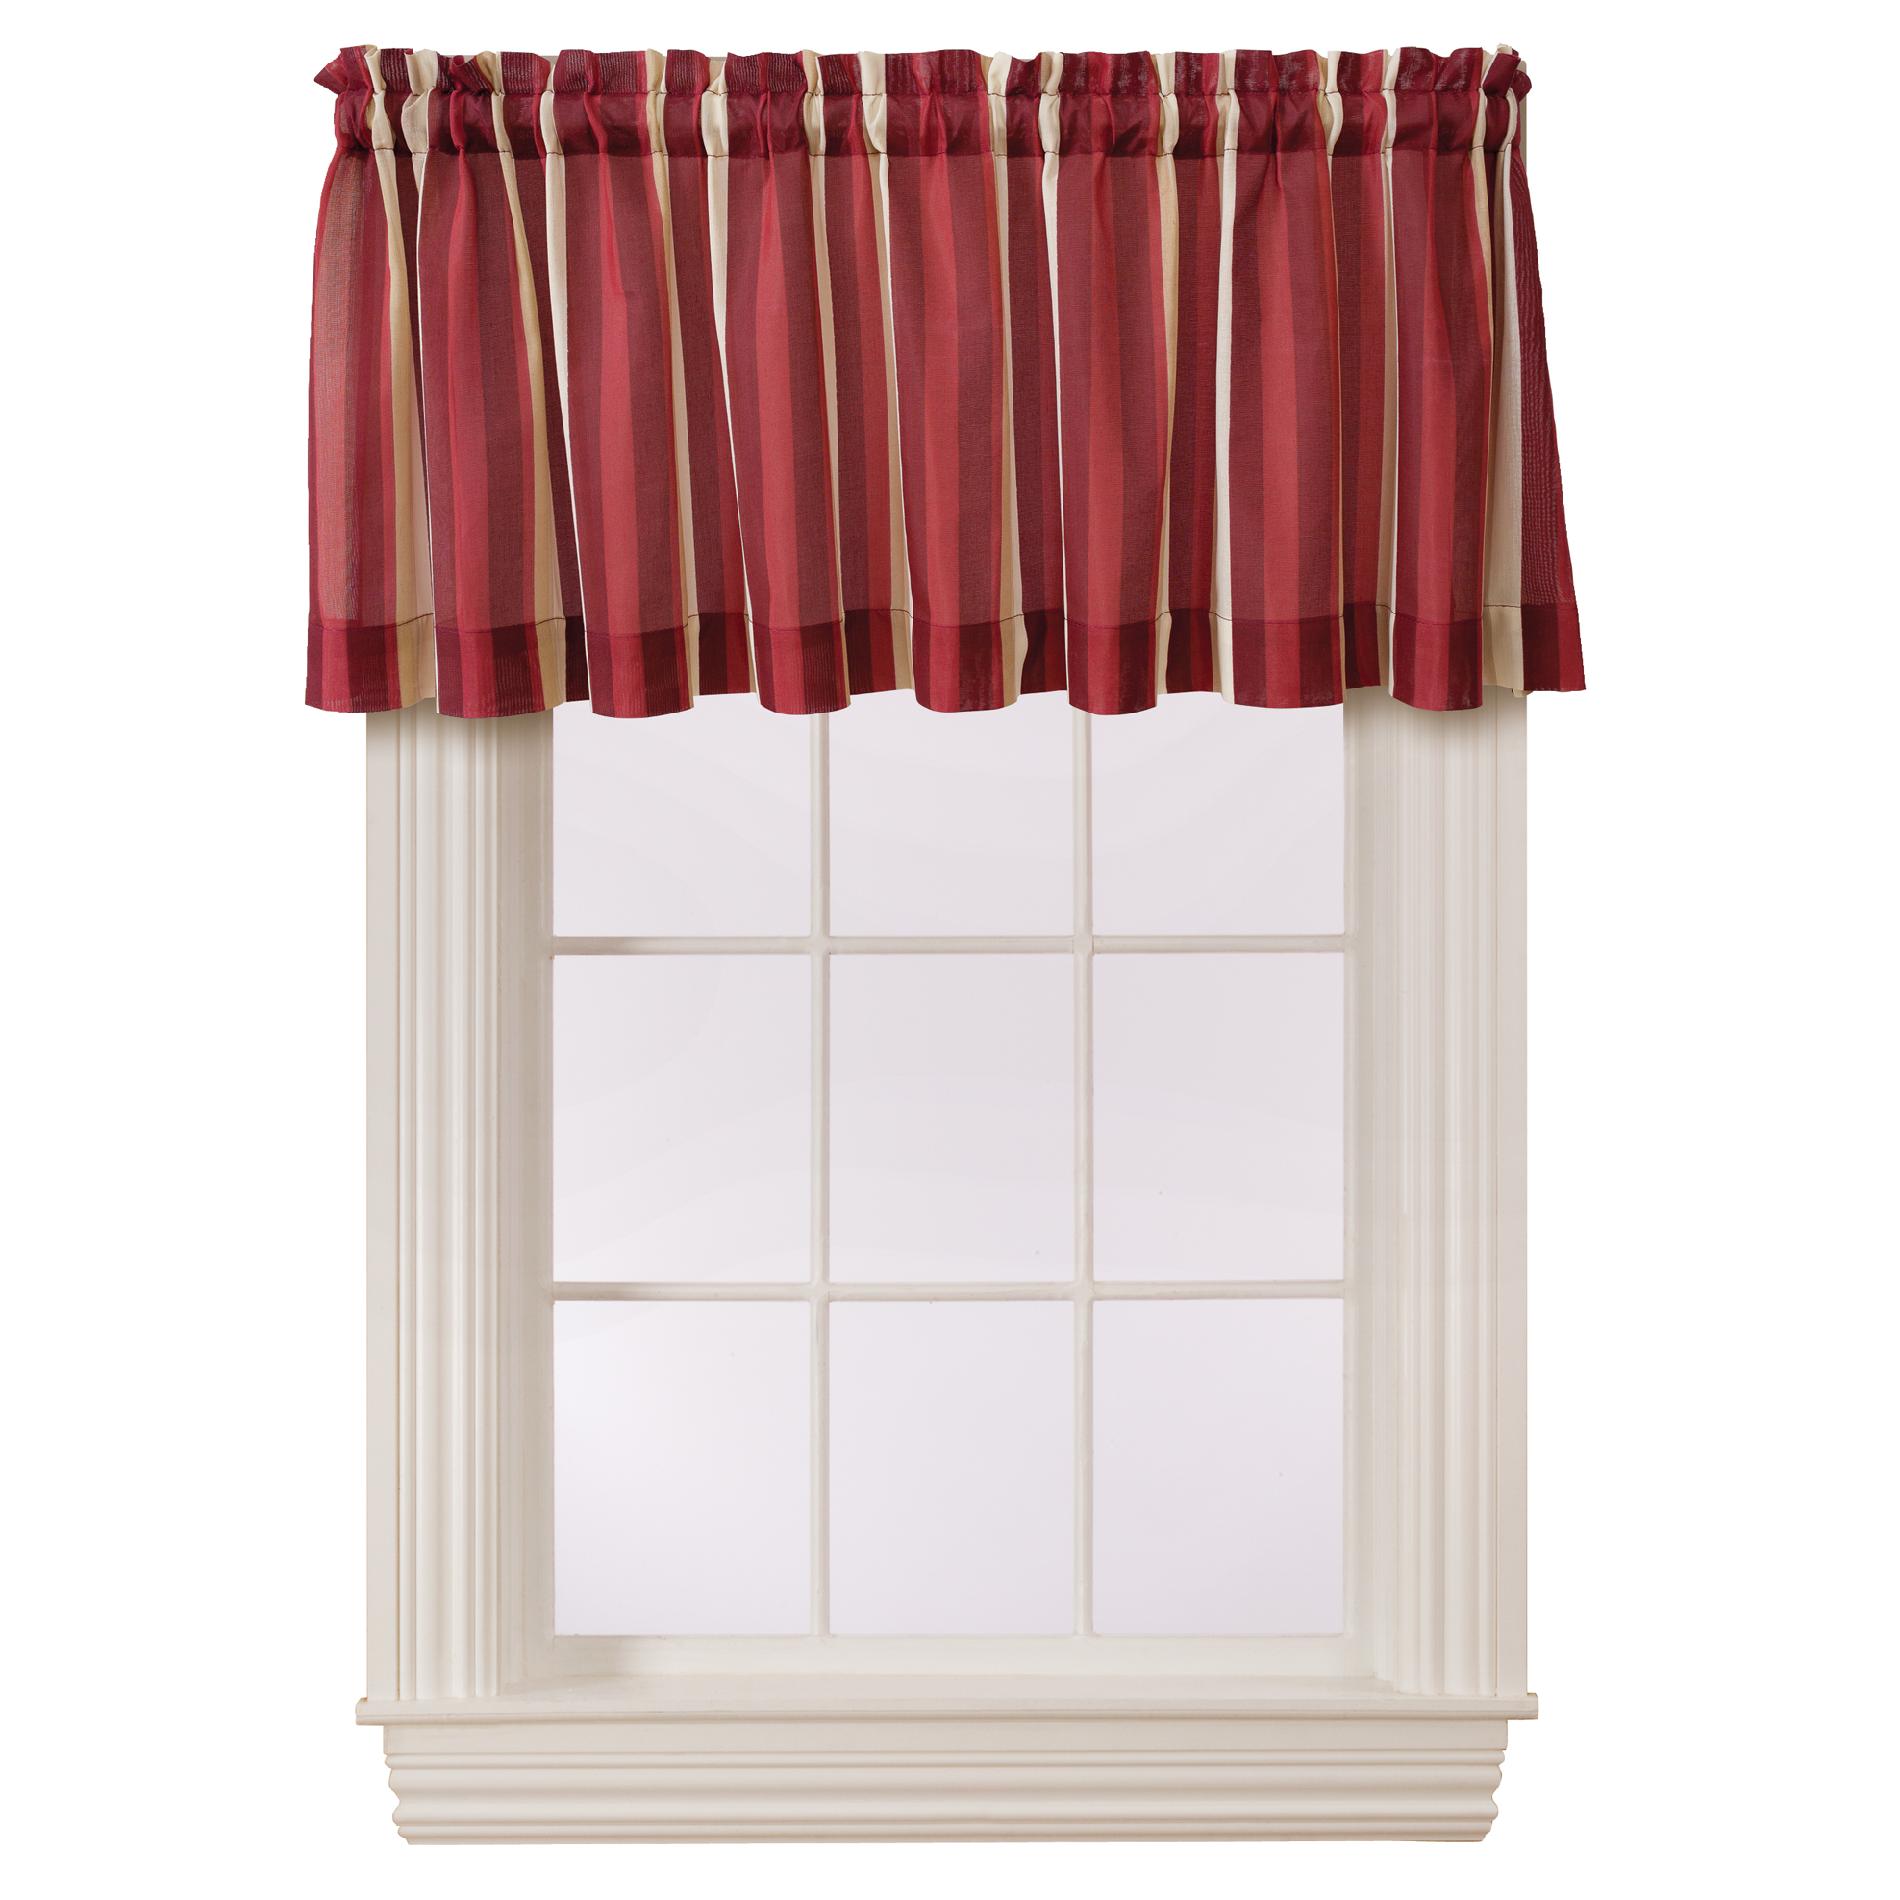 Long Sheer Curtain Panels